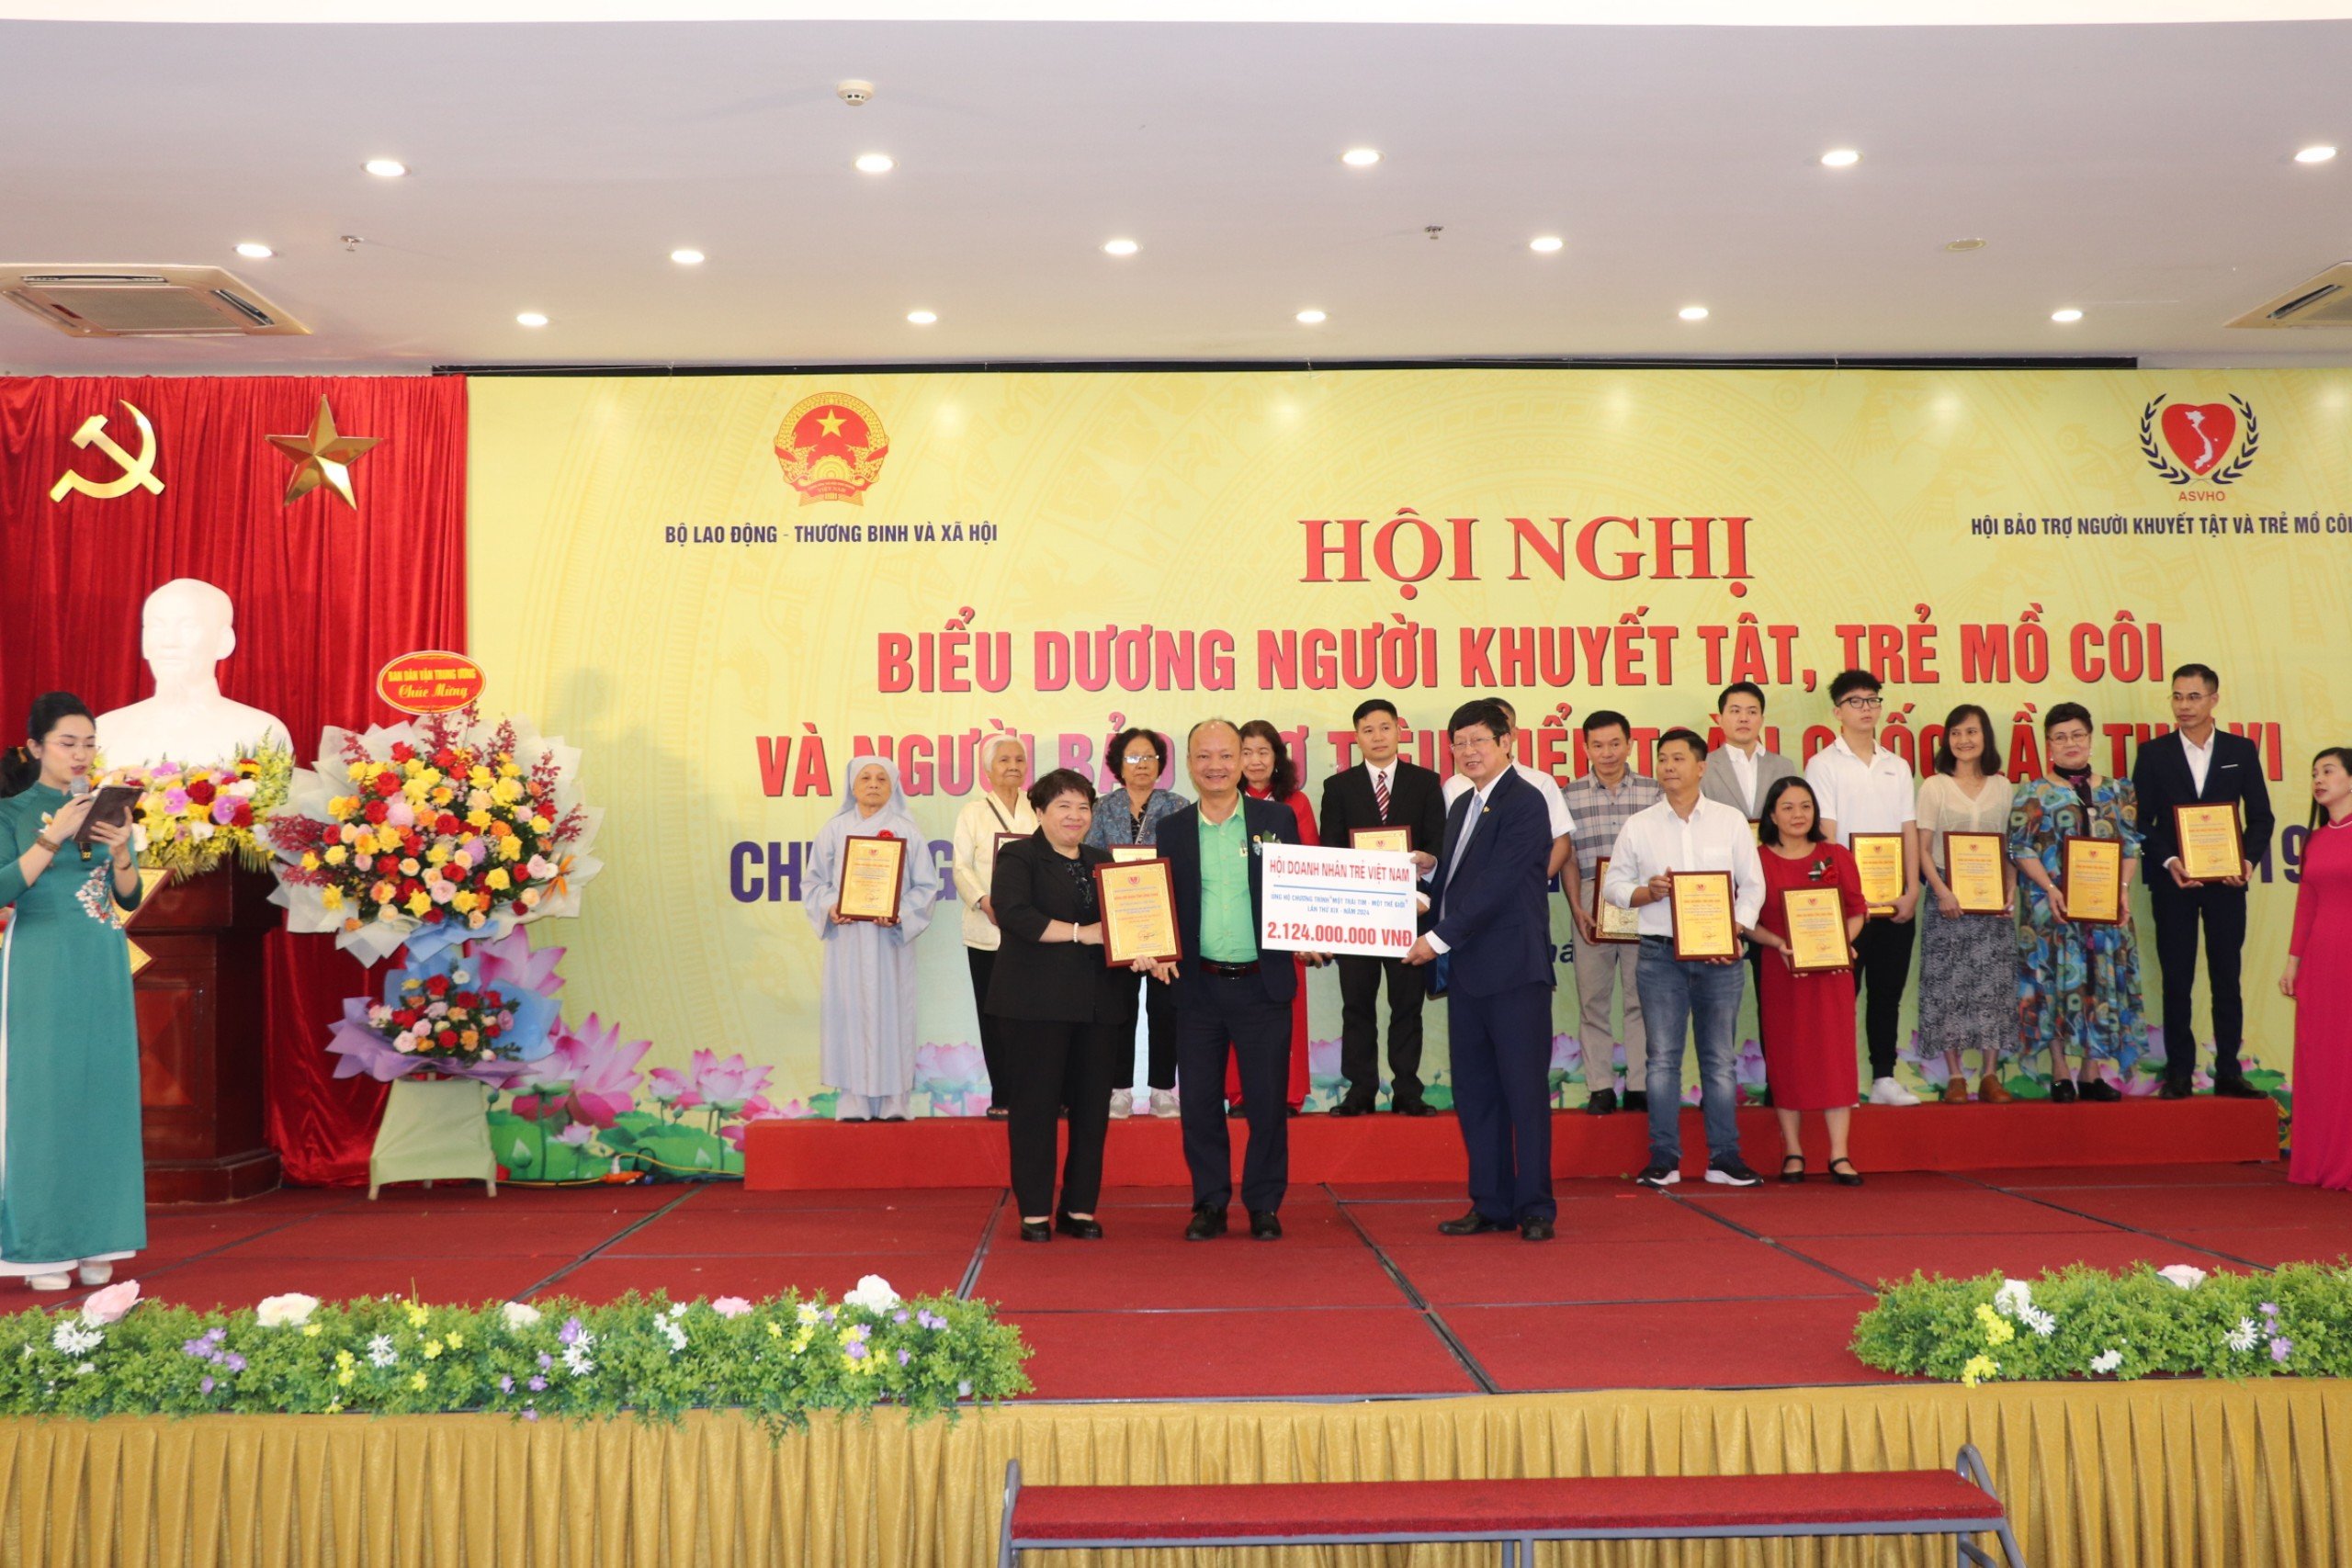 Anh Nguyễn Hồng Phong (thứ 5 từ phải sang) nhận Bảng vinh danh tập thể “Tấm lòng vàng” trong ủng hộ, đồng hành với Quỹ ASVHO.